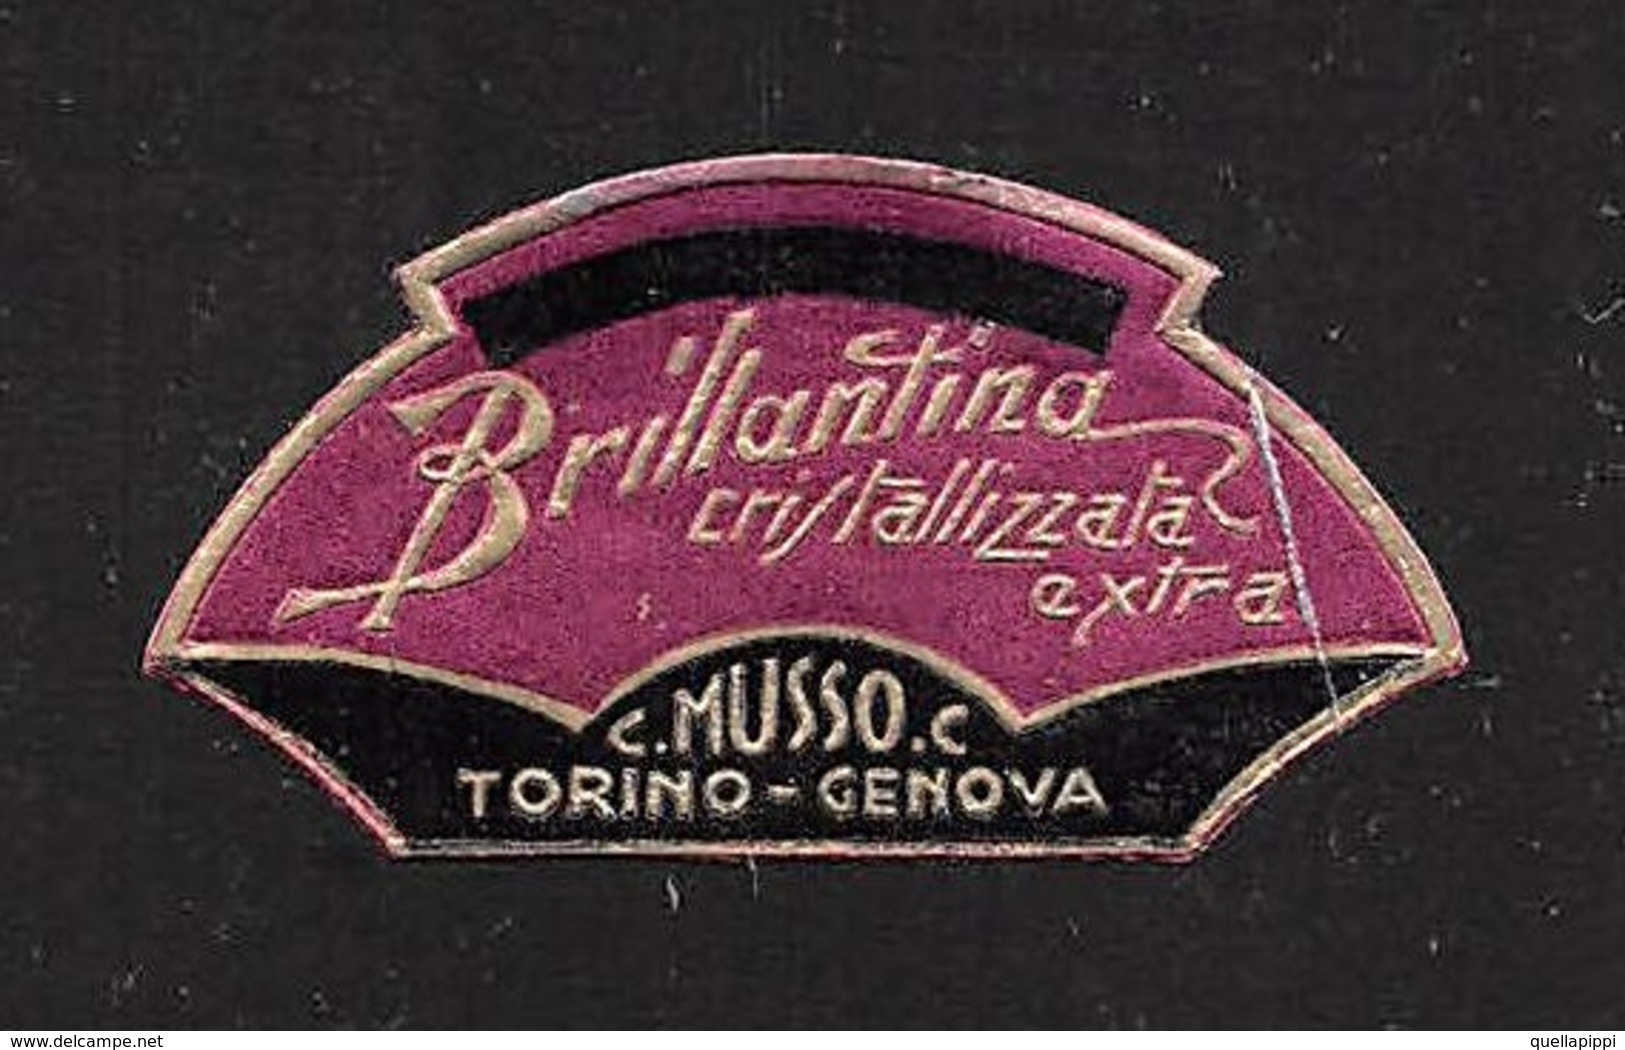 07667 "BRILLANTINA CRISTALLIZZATA EXTRA - C. MUSSO C. - TORINO-GENOVA - 1920 CIRCA" ETICHETTA  ORIGINALE - Etiquettes